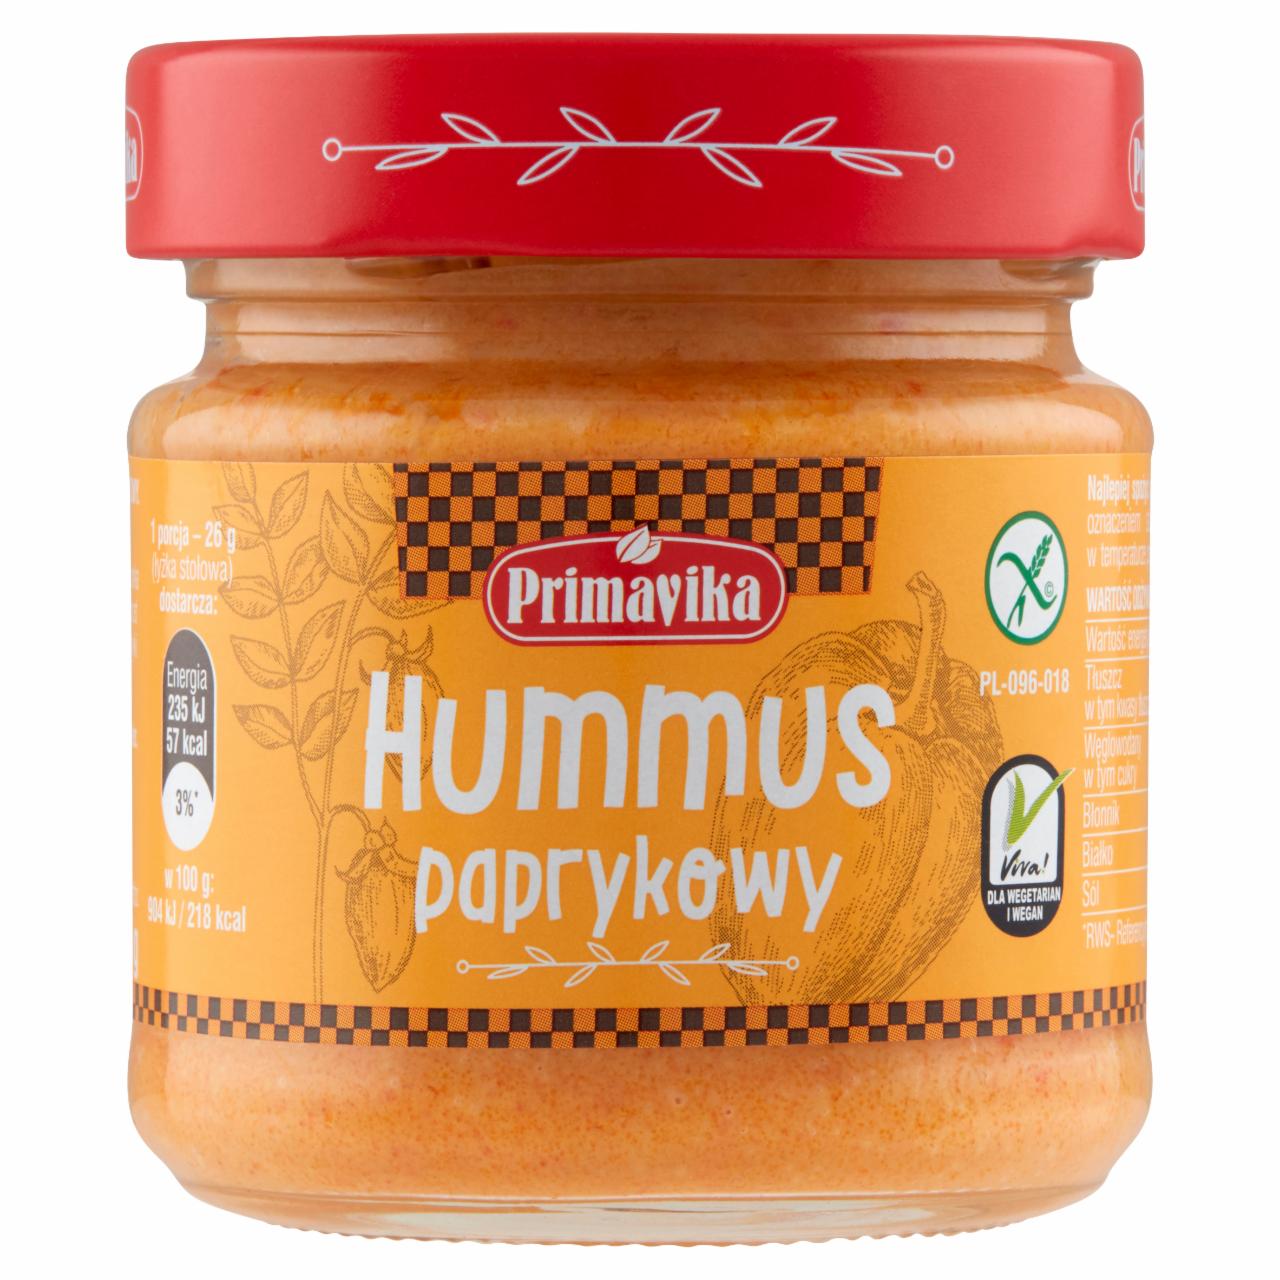 Zdjęcia - Primavika Hummus paprykowy 160 g